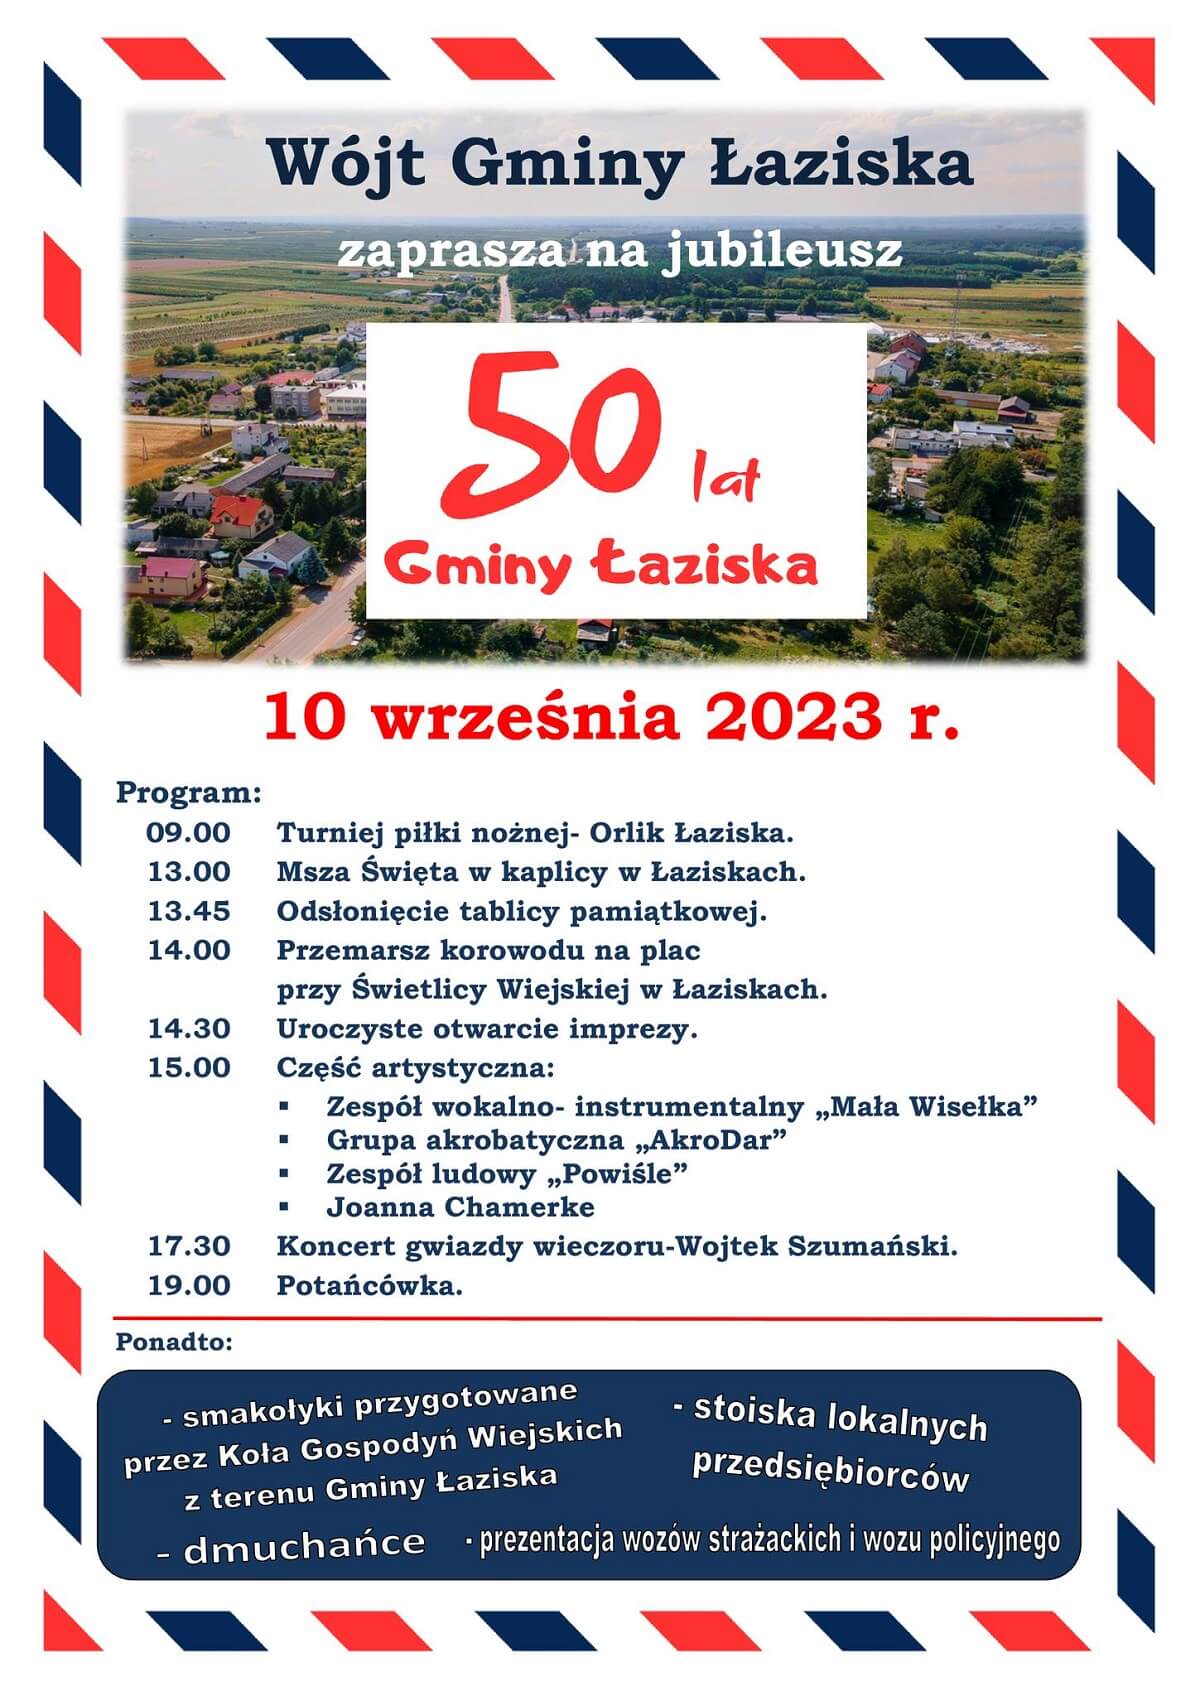 50 lat Gminy Łaziska - plakat, program wydarzenia